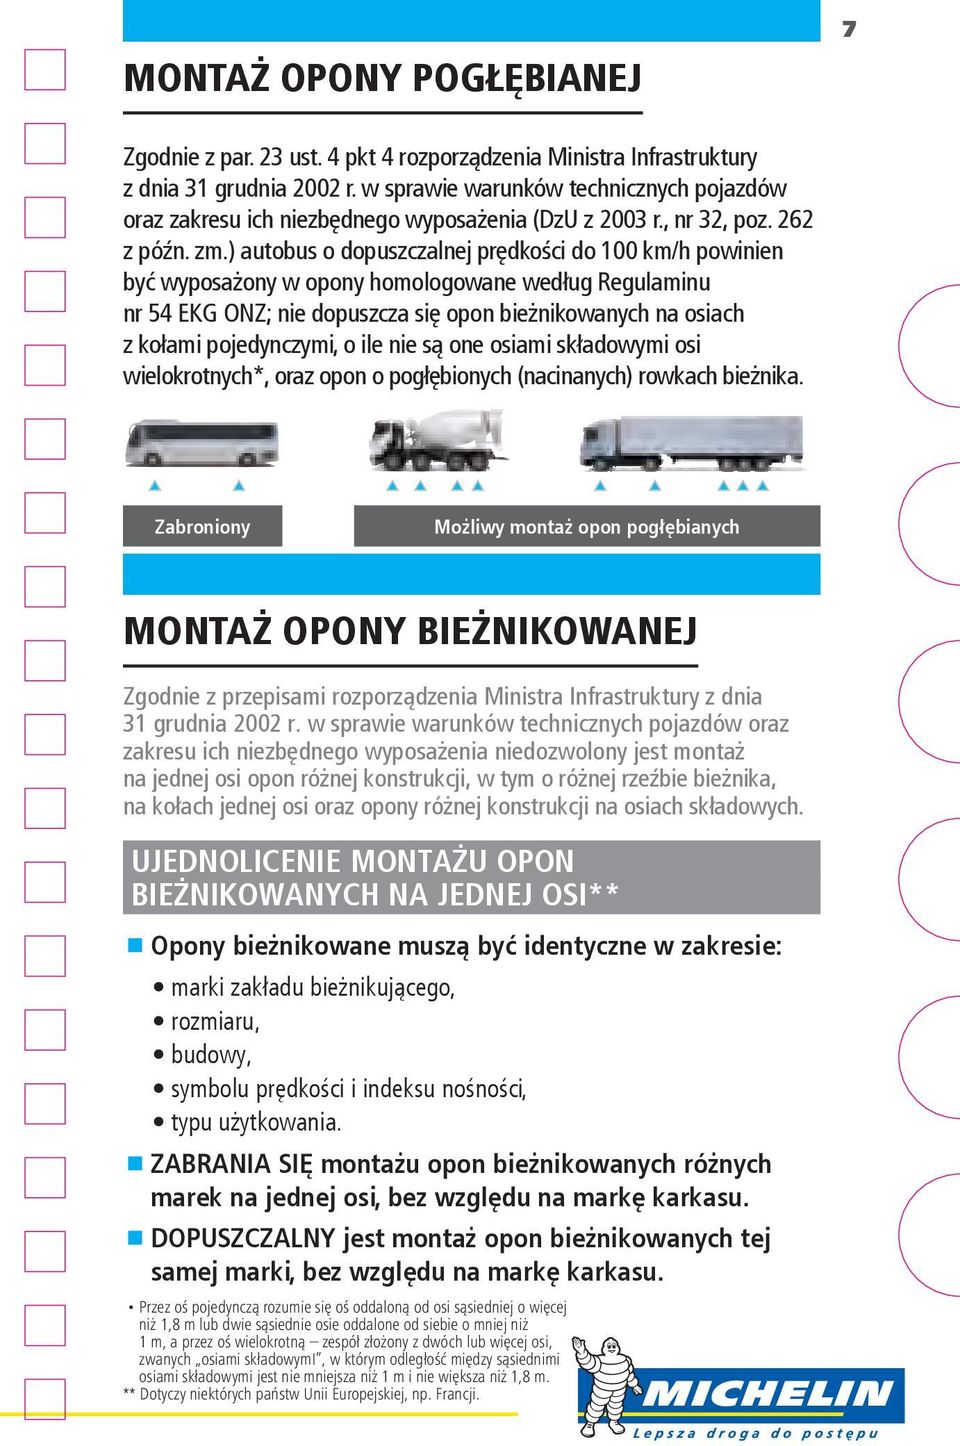 ) autobus o dopuszczalnej prędkości do 100 km/h powinien być wyposażony w opony homologowane według Regulaminu nr 54 EKG ONZ; nie dopuszcza się opon bieżnikowanych na osiach z kołami pojedynczymi, o